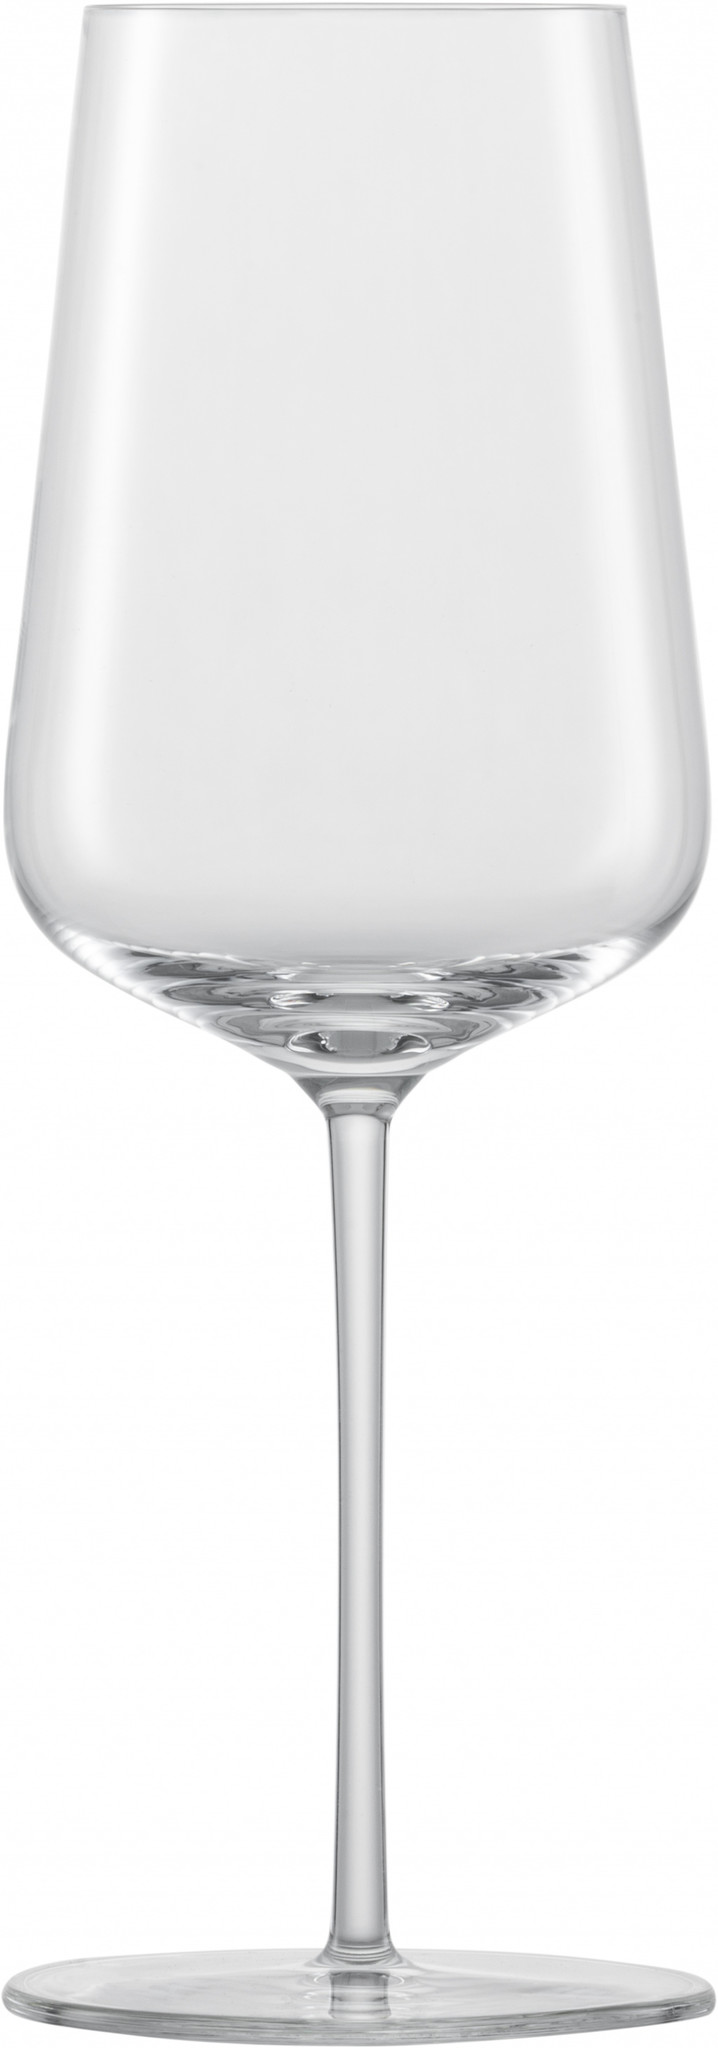 Zwiesel Glas Zwiesel Glas Vervino Chardonnay wijnglas MP 1 - 0.487 Ltr - Geschenkverpakking 2 glazen